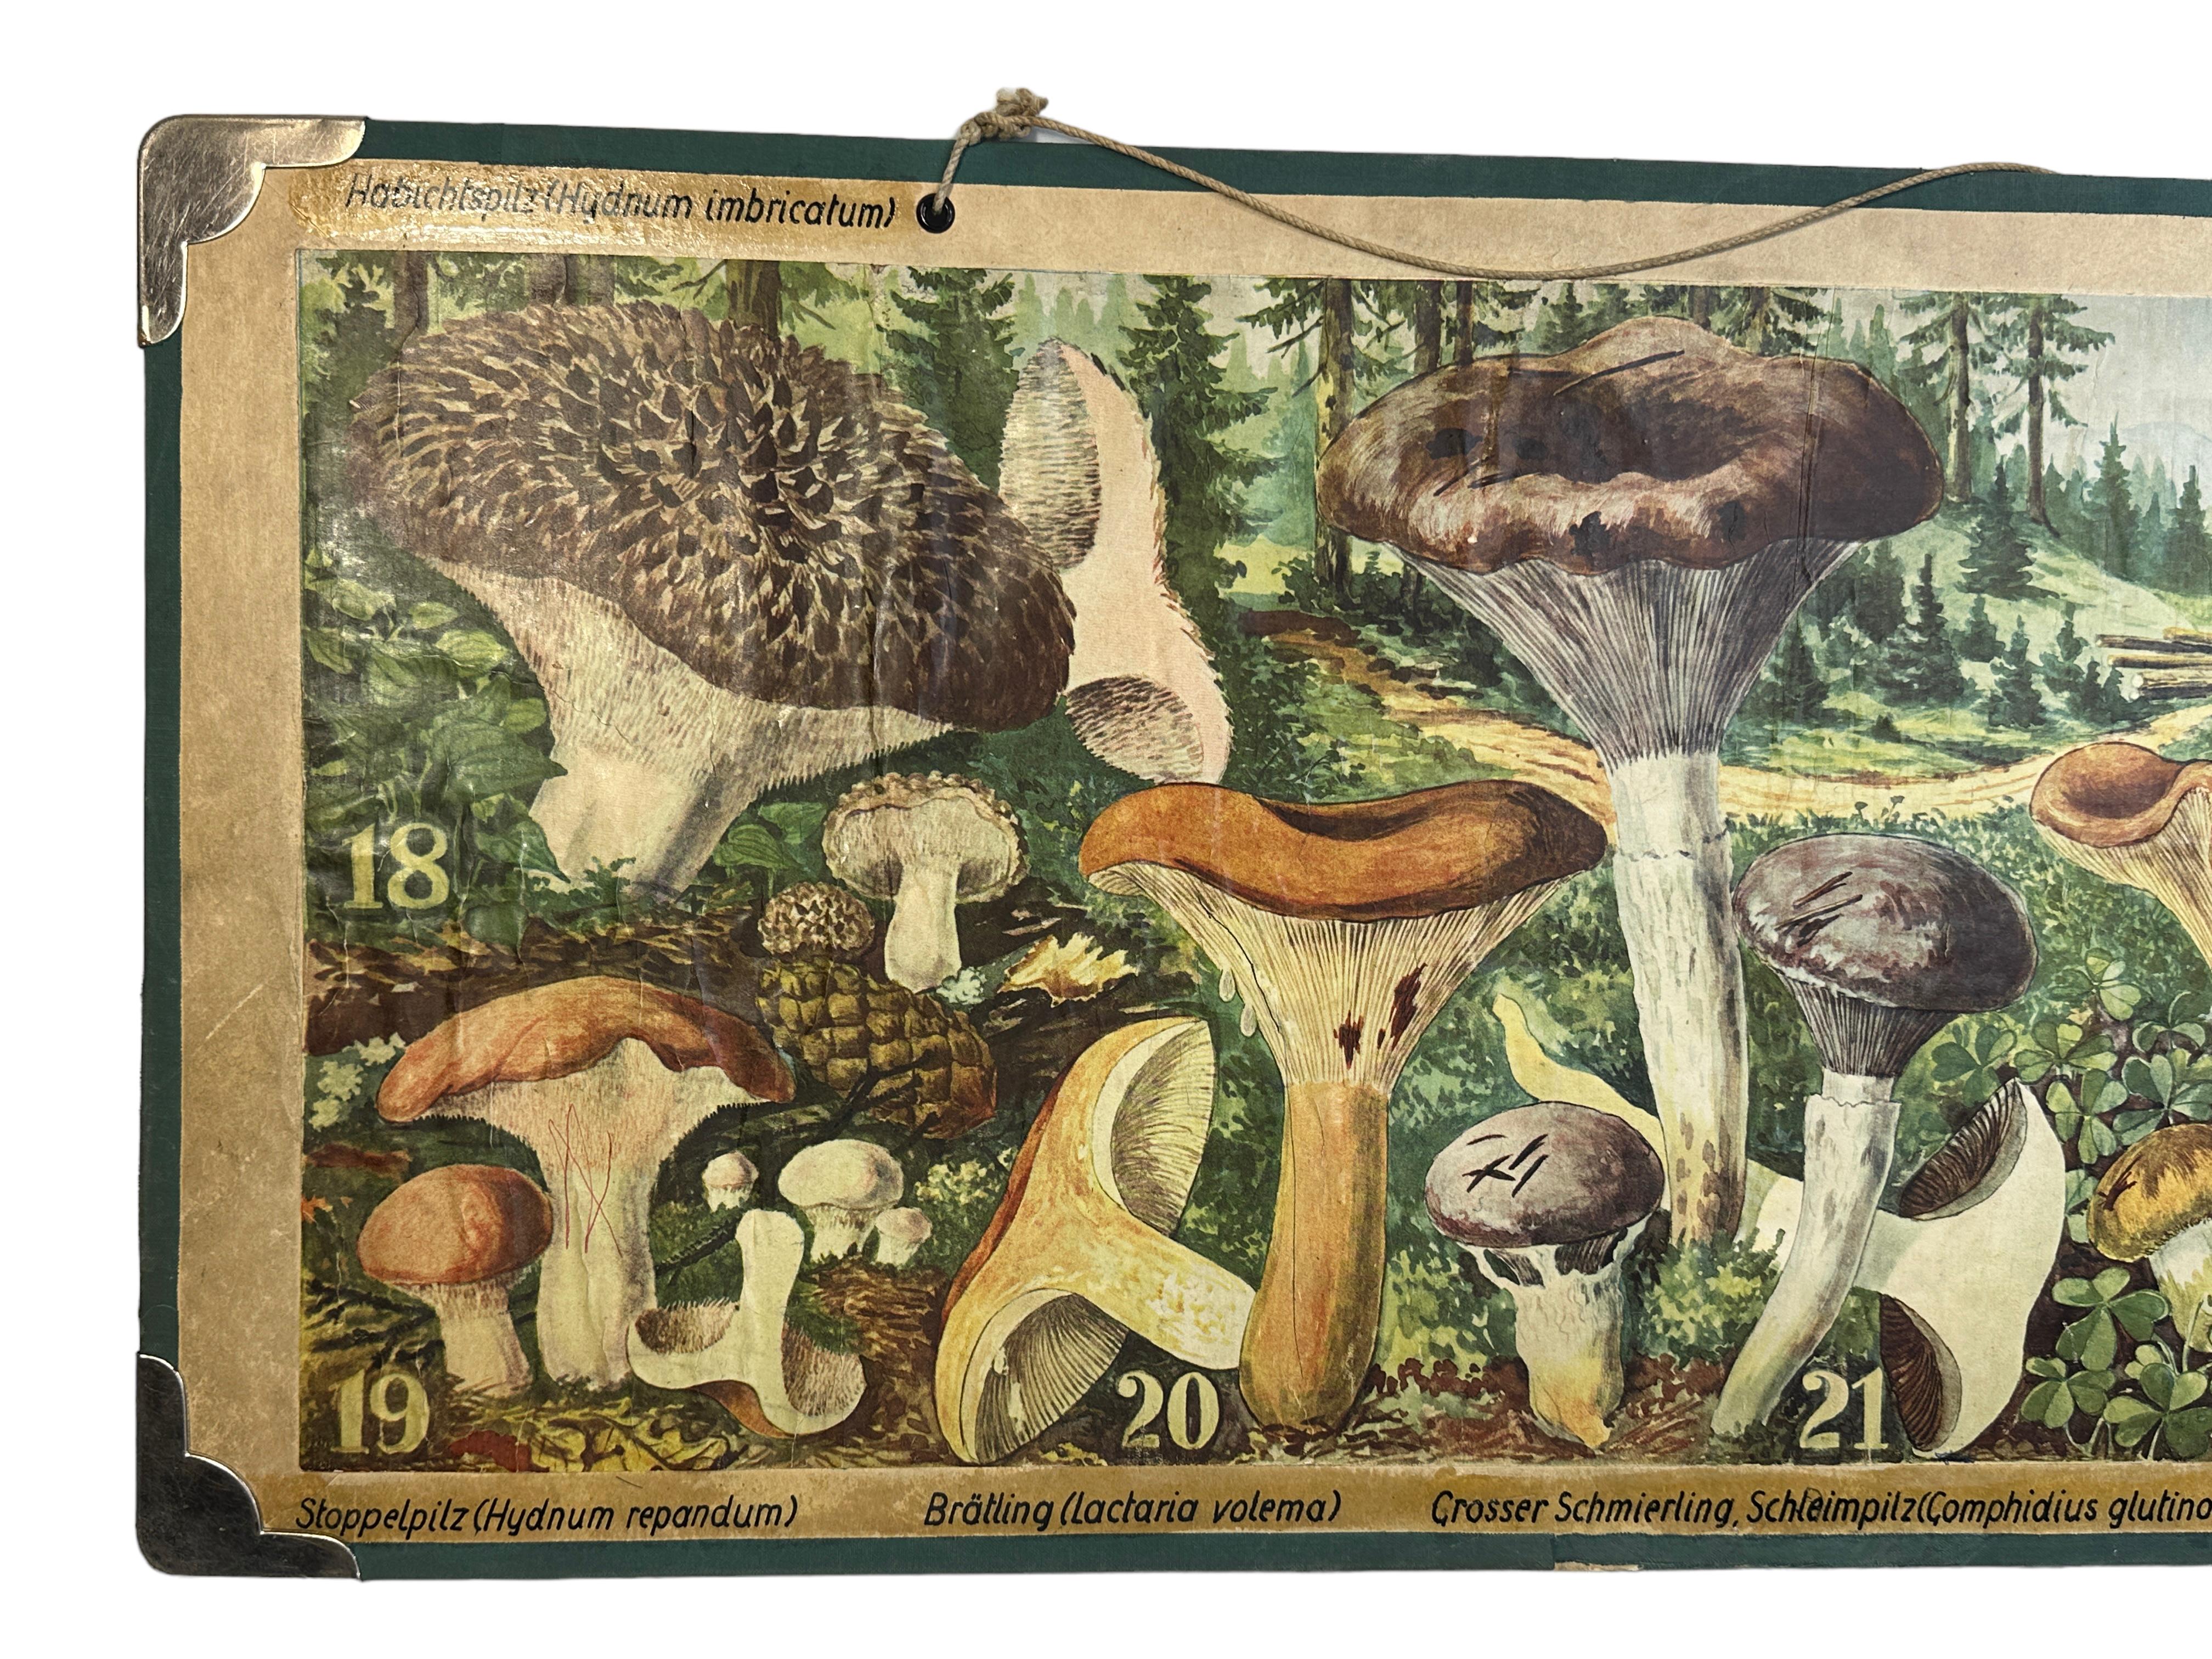 Diese seltene Vintage-Wandtafel zeigt verschiedene Arten von Pilzen, die in Mitteleuropa heimisch sind. Diese Art von Wandtafeln werden in deutschen Schulen als Unterrichtsmaterial verwendet. Bunter Druck auf verstärktem Karton. 
Diese Art von